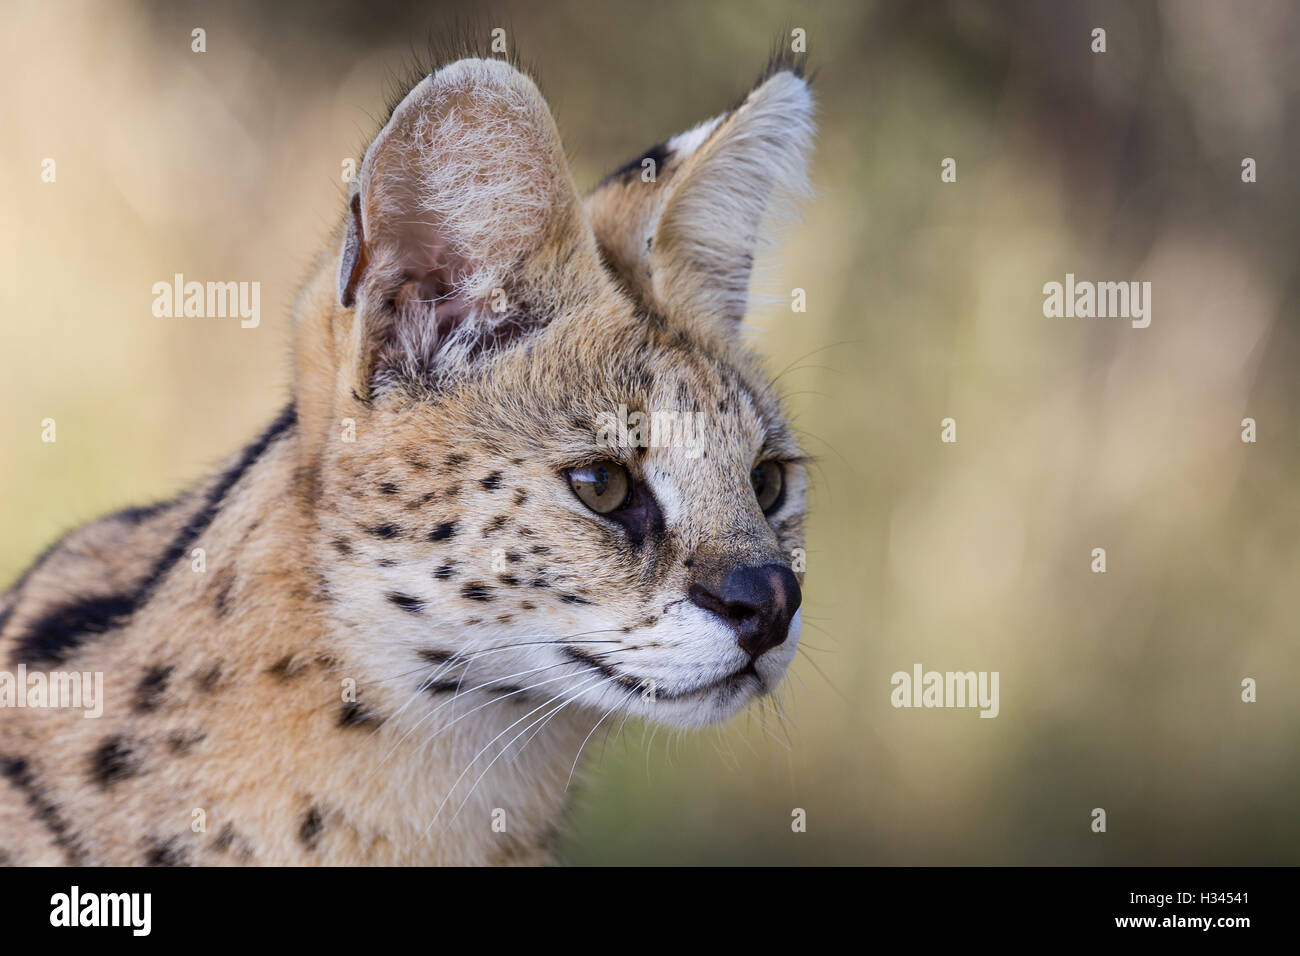 Dies ist eine Nahaufnahme Portrait der Kopf einer serval, eine gemeinsame wilde Katze im südlichen Afrika. (In Wildlife Sanctuary fotografiert) Stockfoto